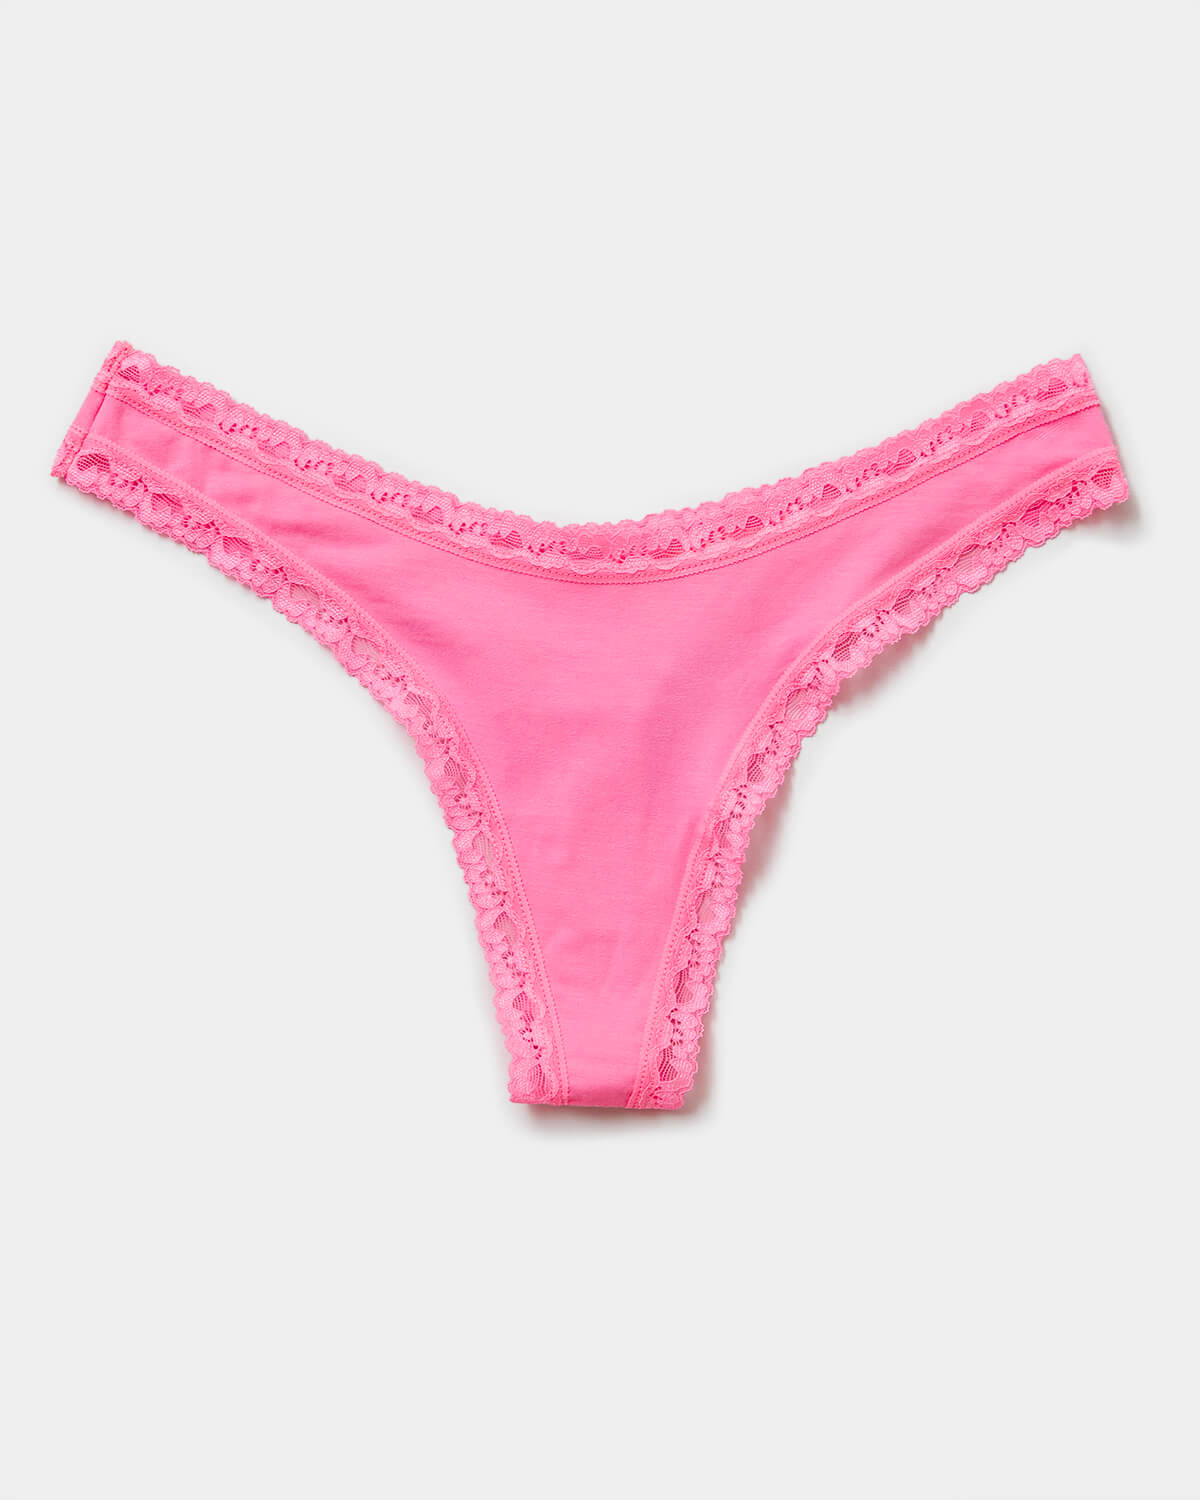 Victoria's Secret PINK No Show Thong Panty Size Bahrain